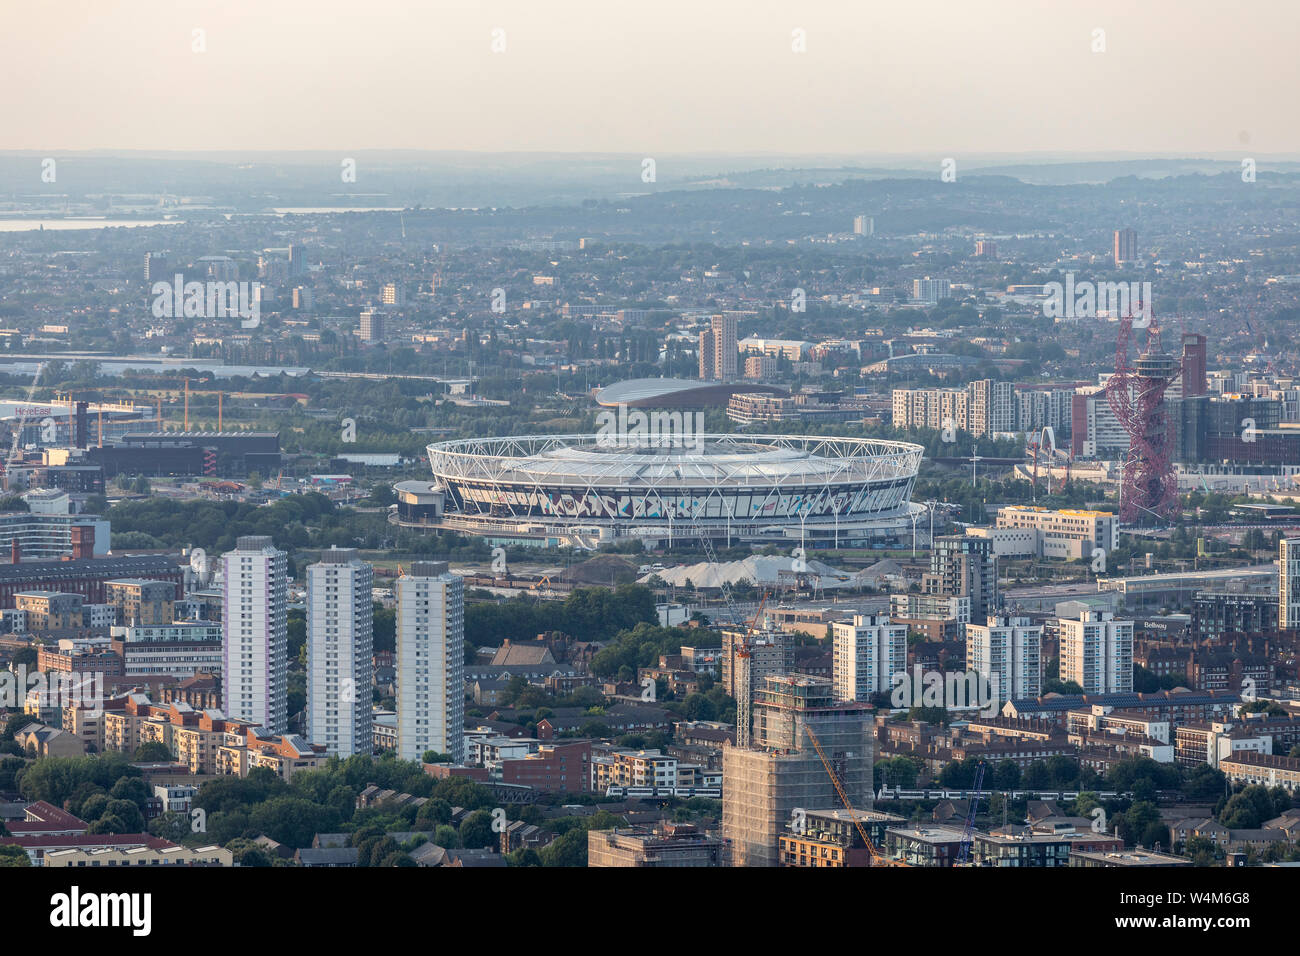 View of London Stadium, West Ham Ground Stock Photo